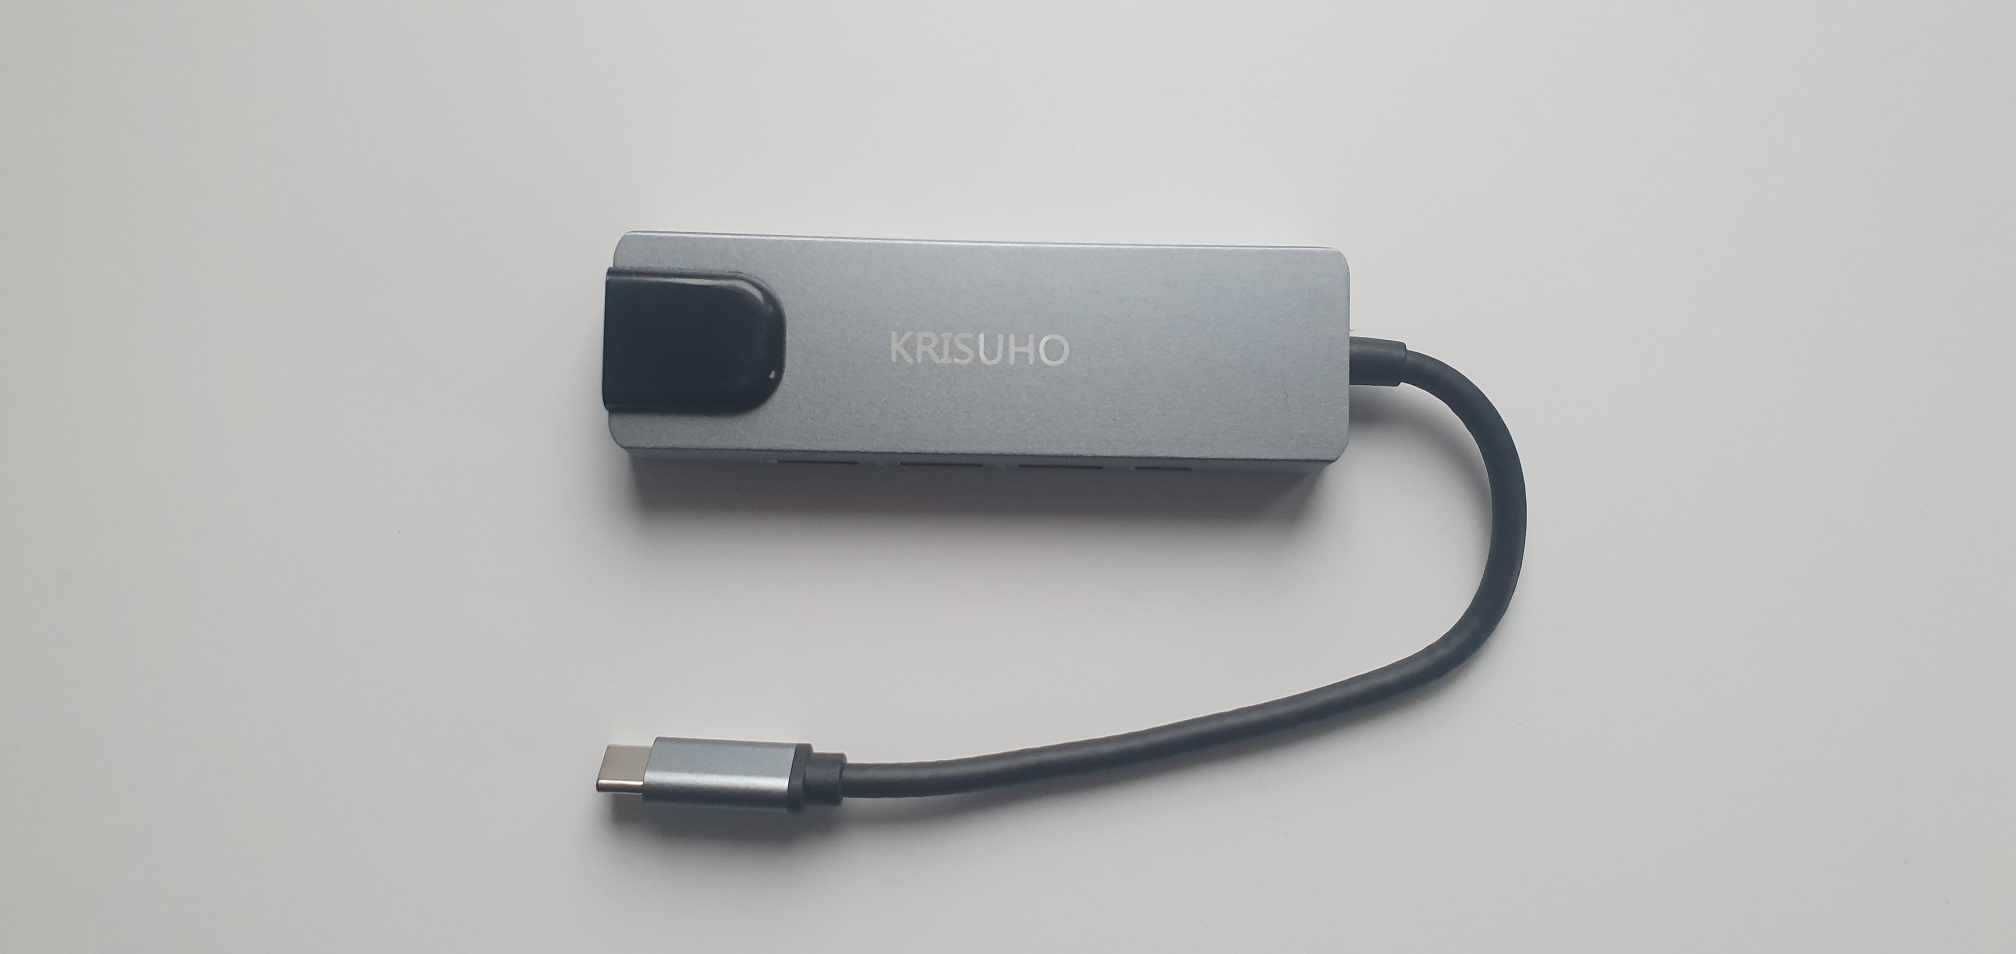 Hub USB C, KRISUHO 5 w 1 USB C na HDMI, wieloportowy adapter